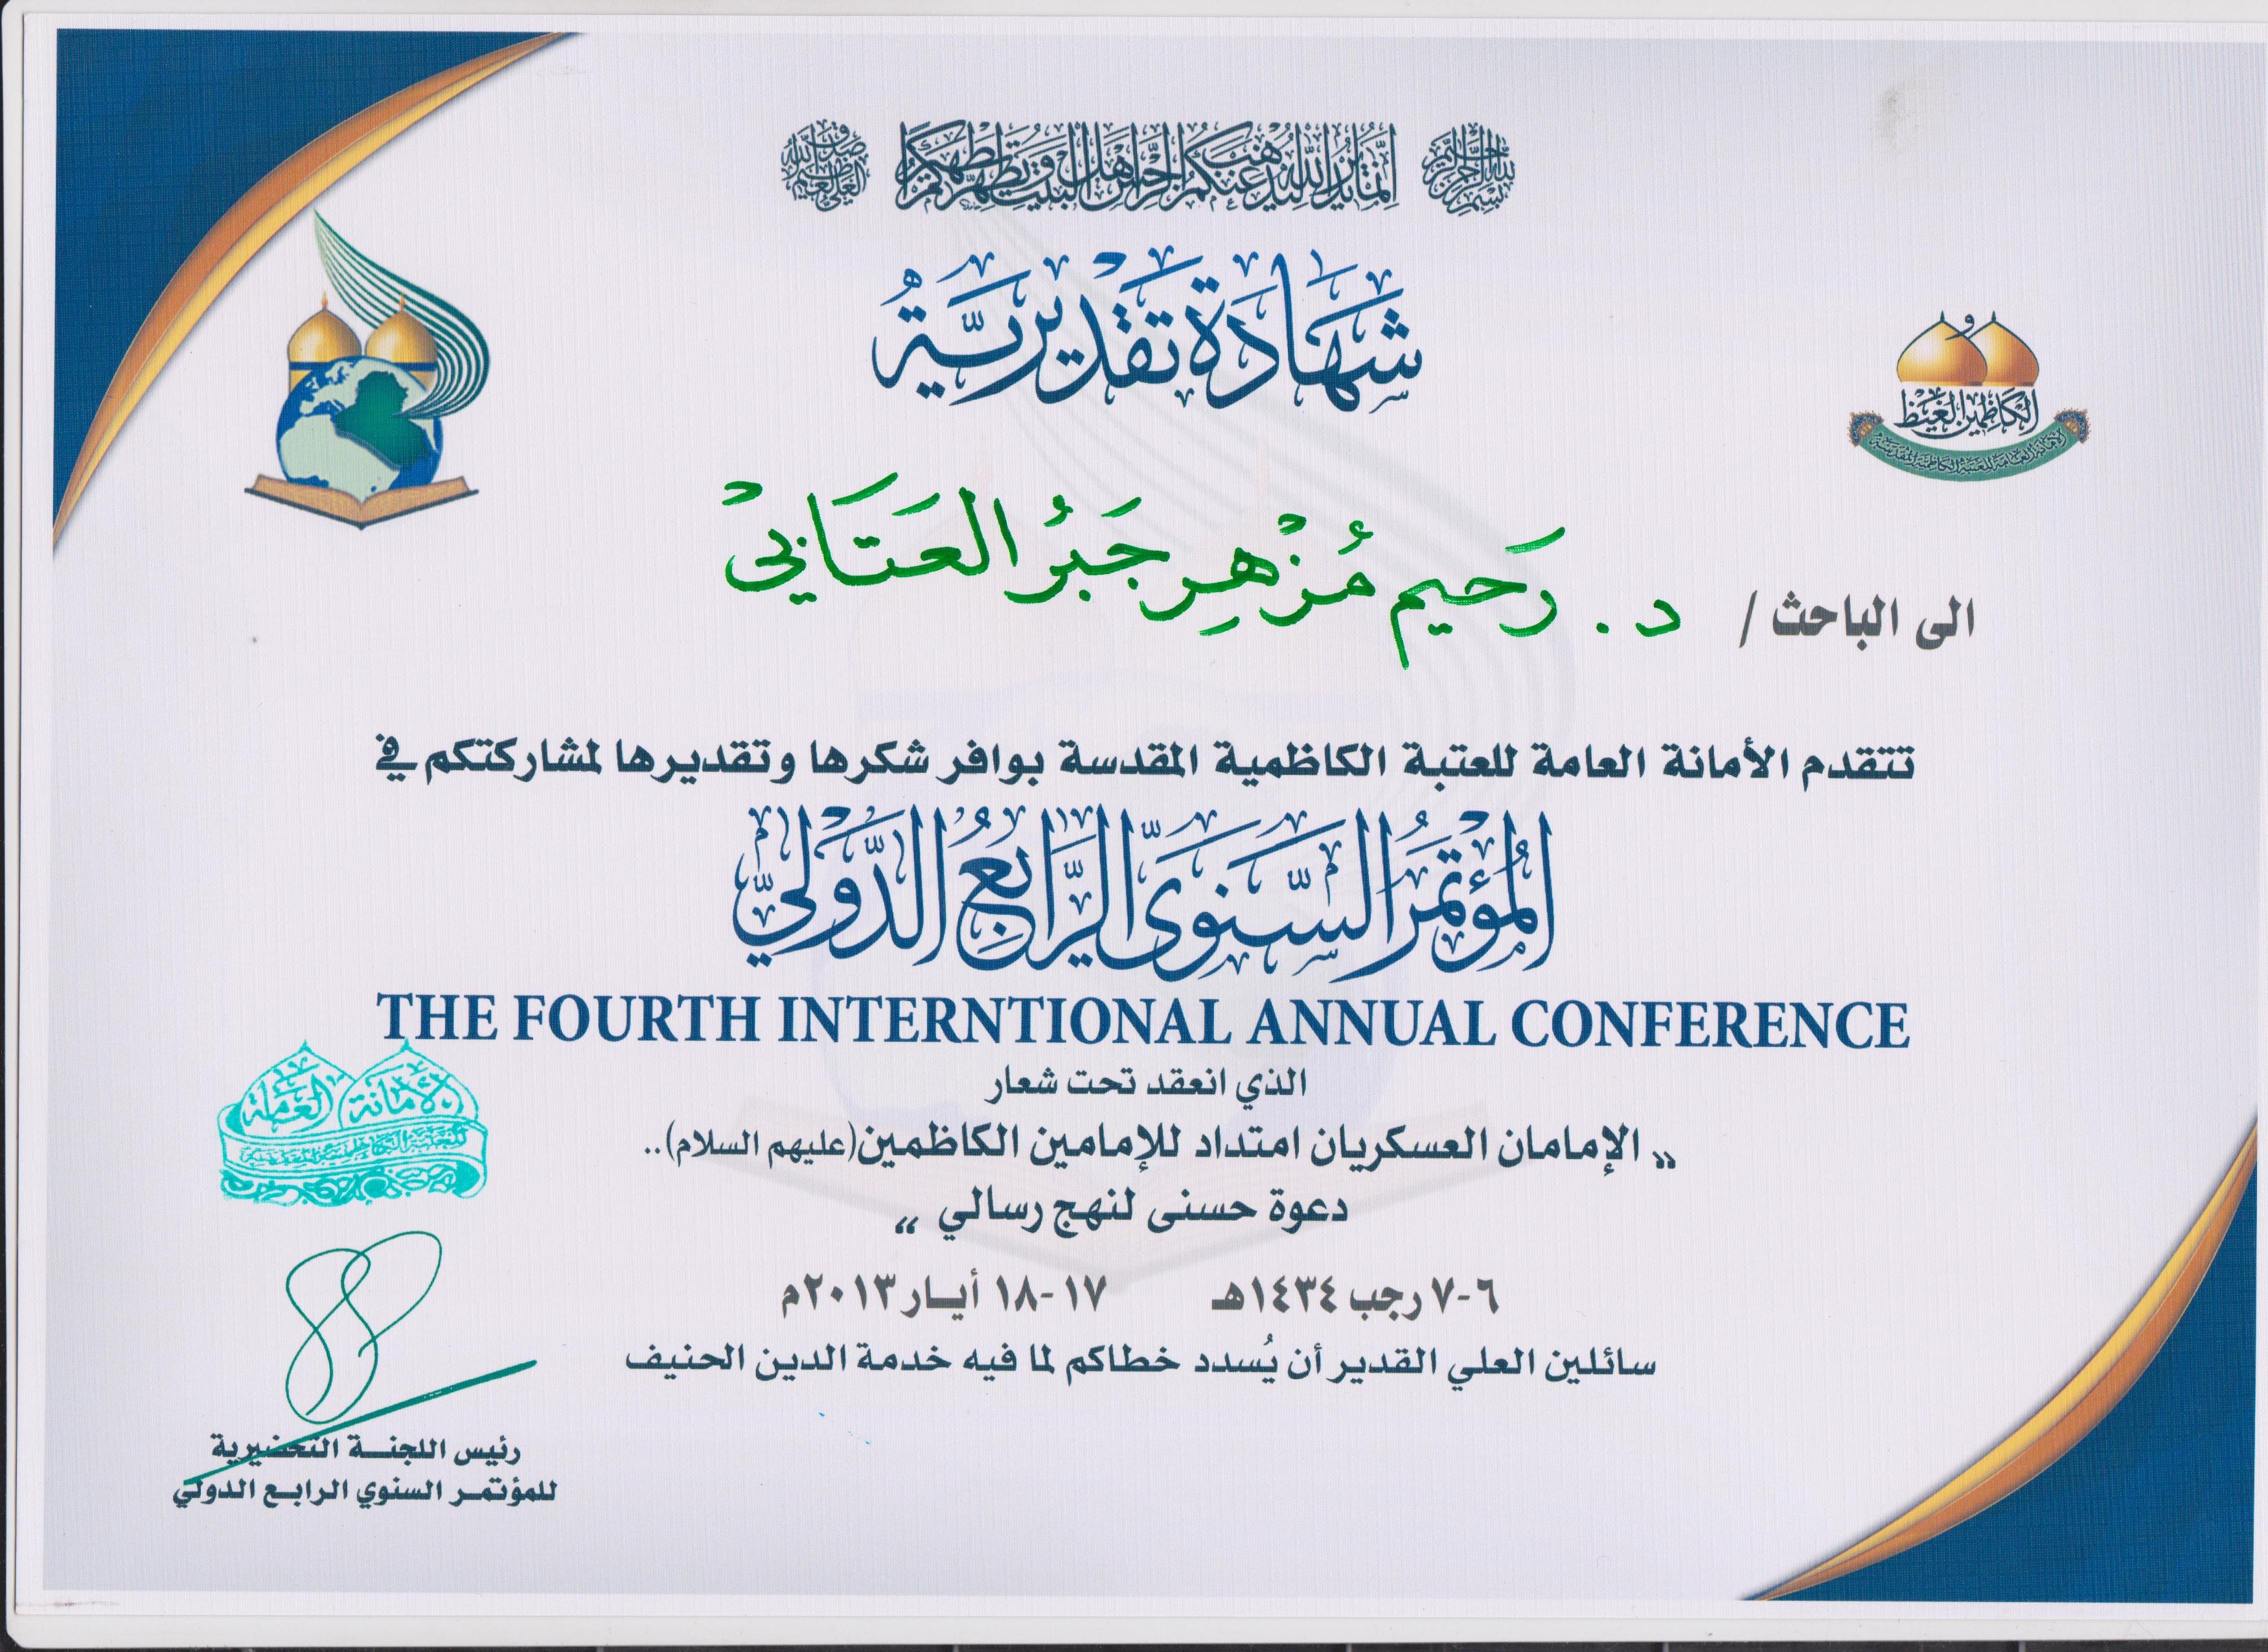 شهادة تقديرية للمدرس الدكتور رحيم مزهر العتابي كلية اللغات